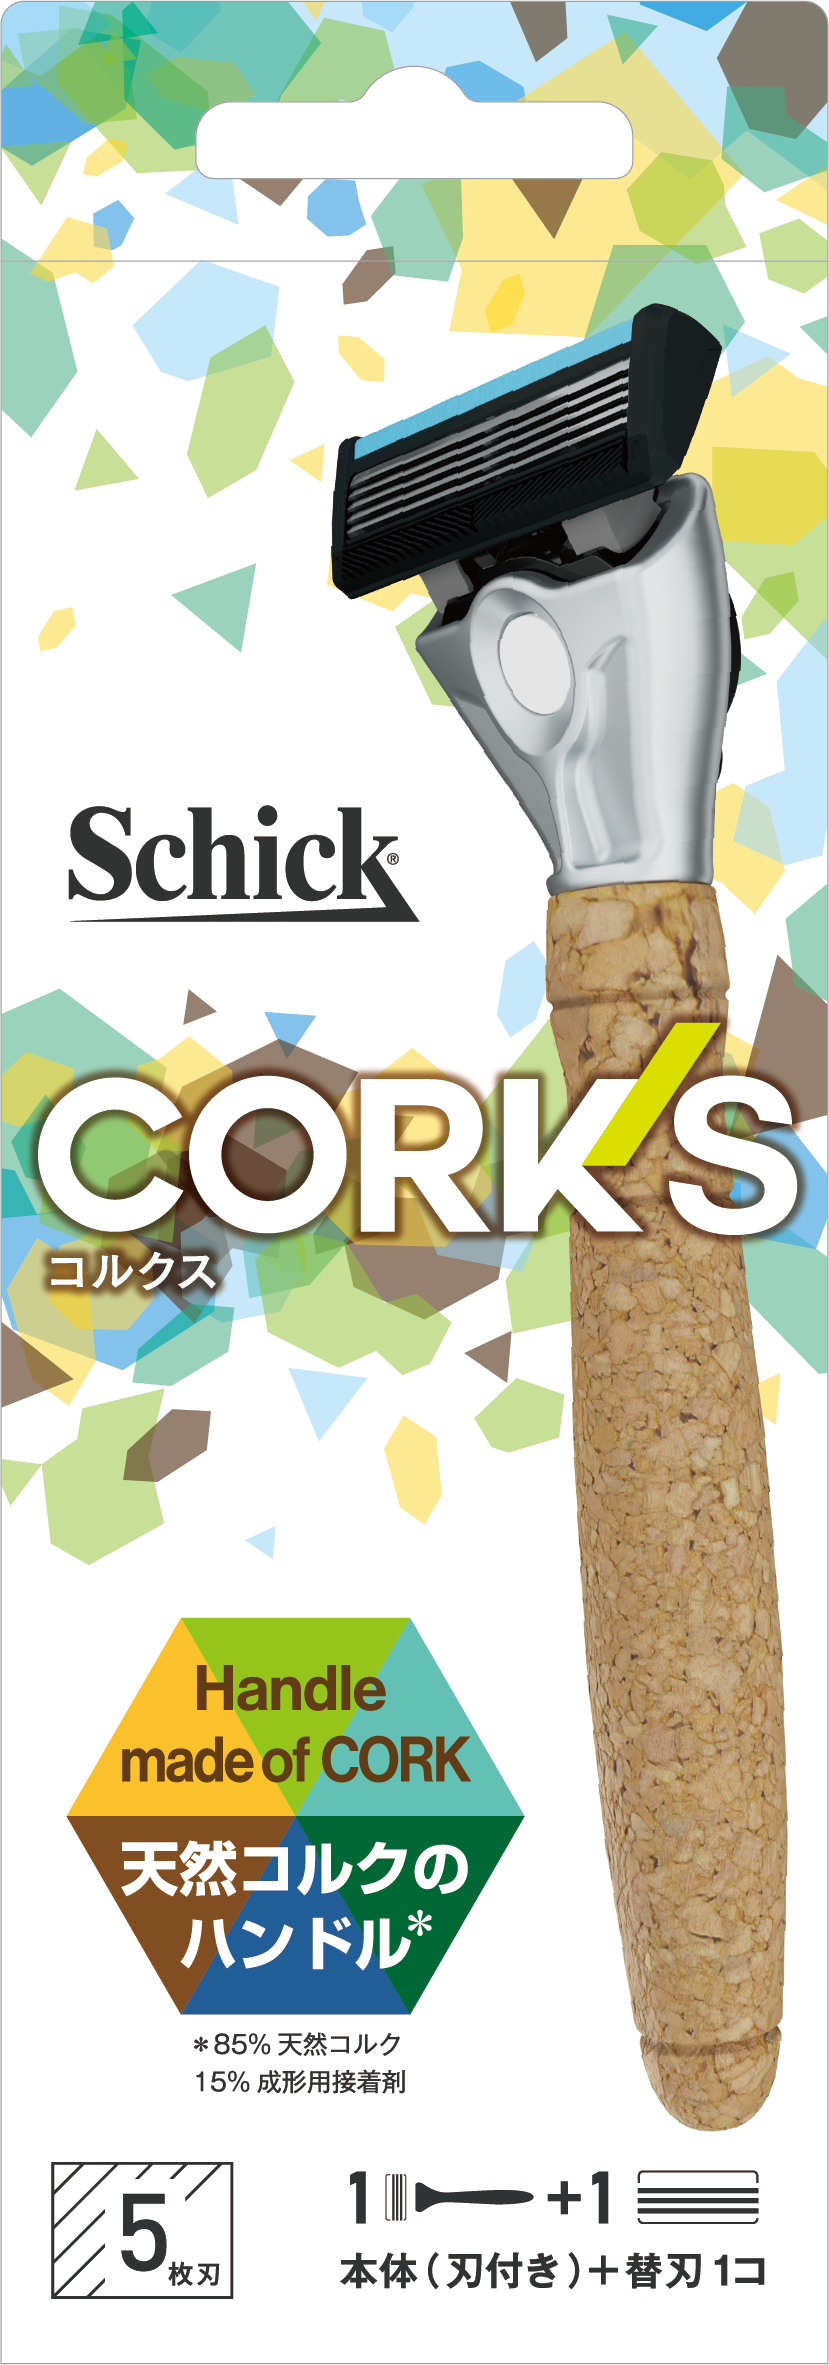 Schick から環境に優しい、サスティナブルなカミソリ発売！再生可能な天然コルク 85%をハンドル部に使用したカミソリ「コルクスホルダー」2021 年 9 月 19 日（日）日本上陸！のサブ画像1